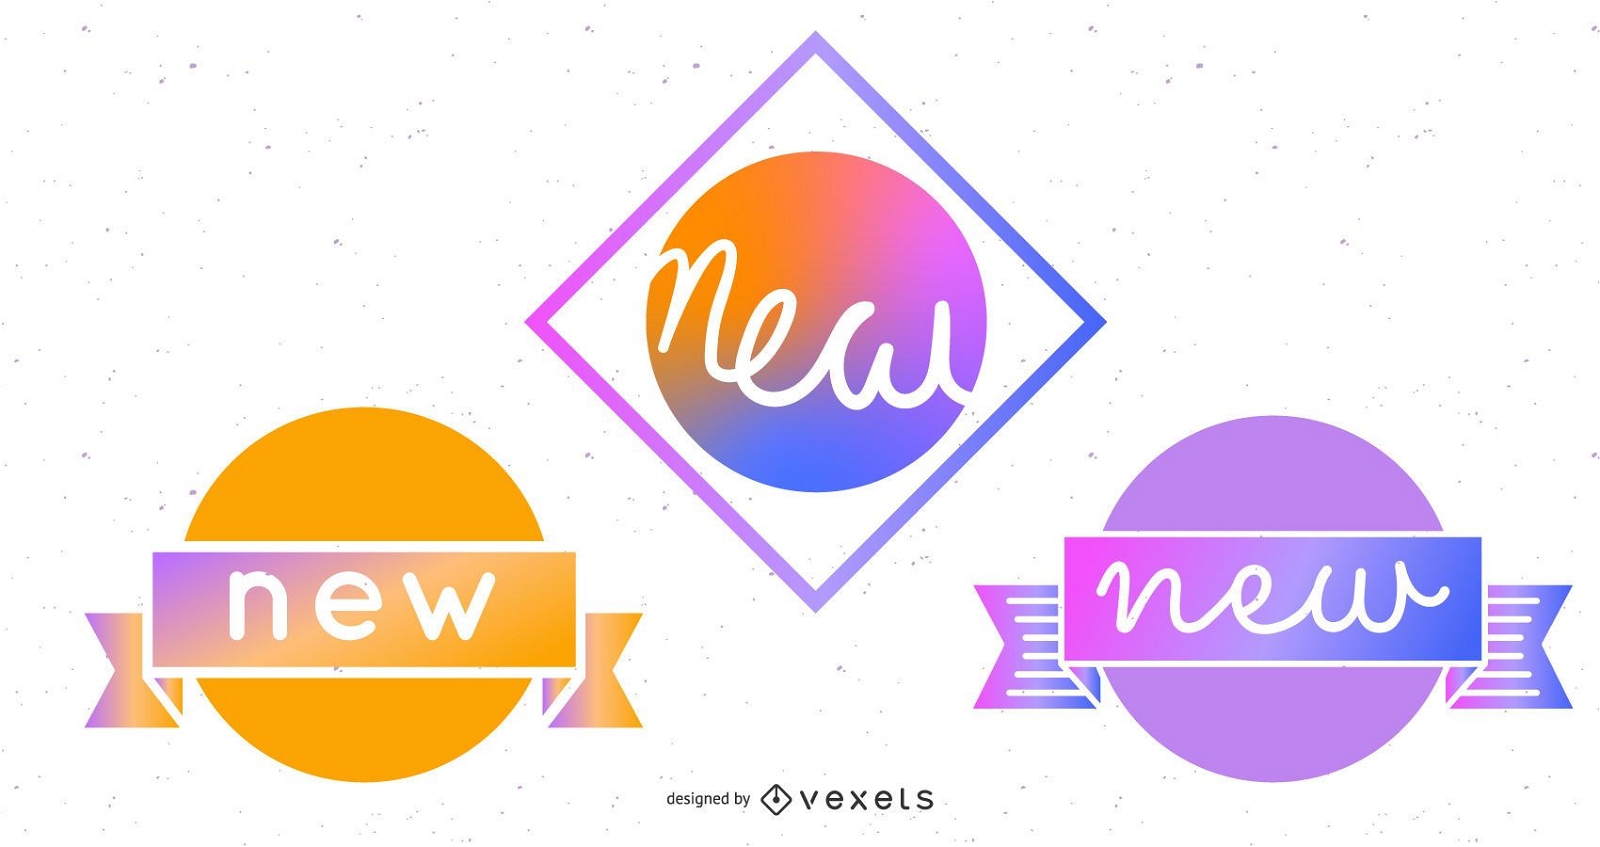 Novos adesivos de emblemas - elemento da web